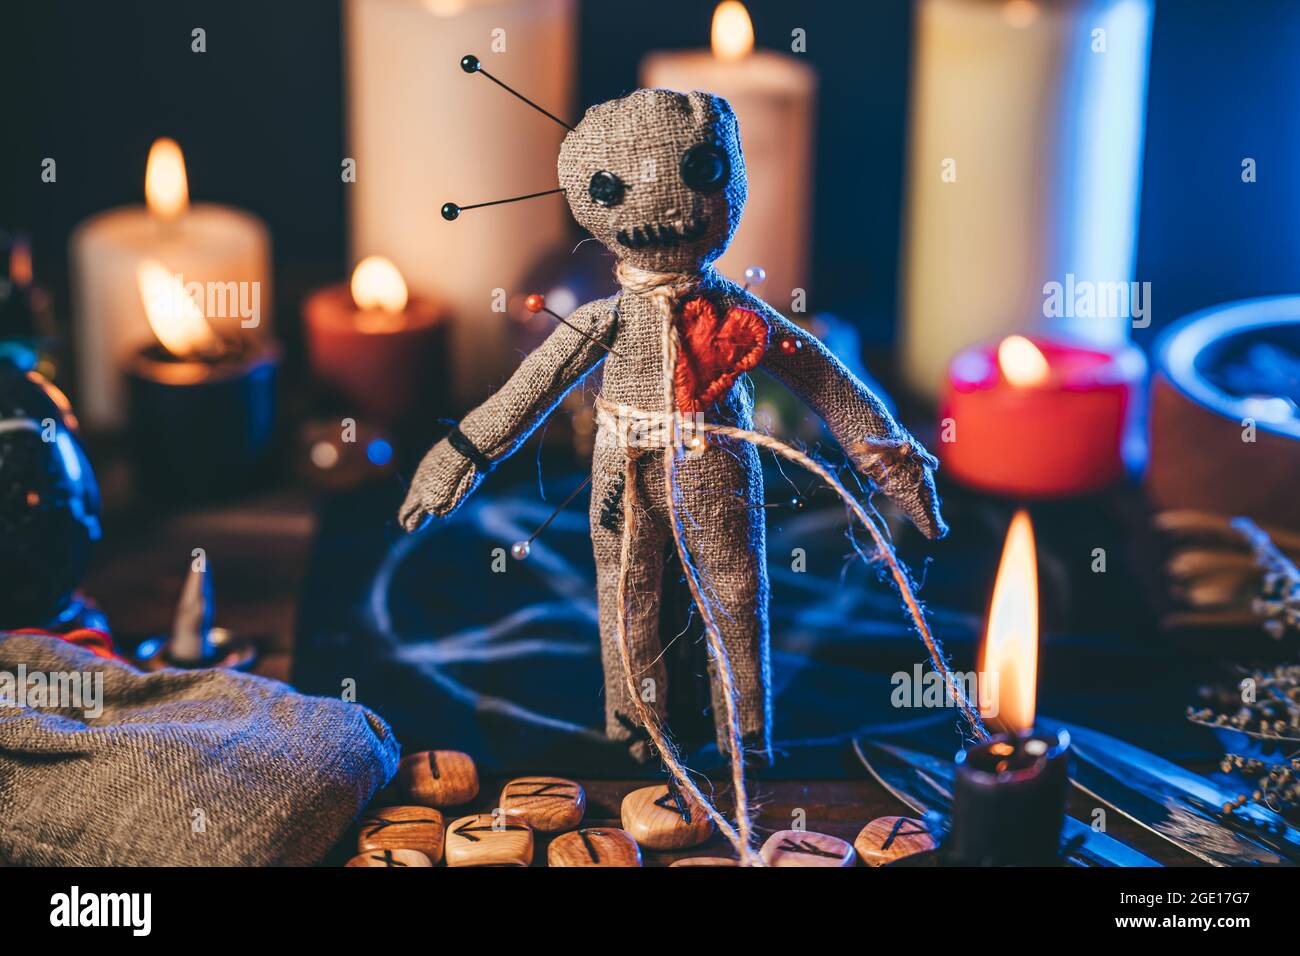 Voodoo Puppe mit Nadeln in magischen Tisch mit Kerzen und okkulten Objekten besetzt. Magisches und düsteres gruseliges Ritual. Vergeltung oder Rache durch Hexerei-Konzept. Stockfoto